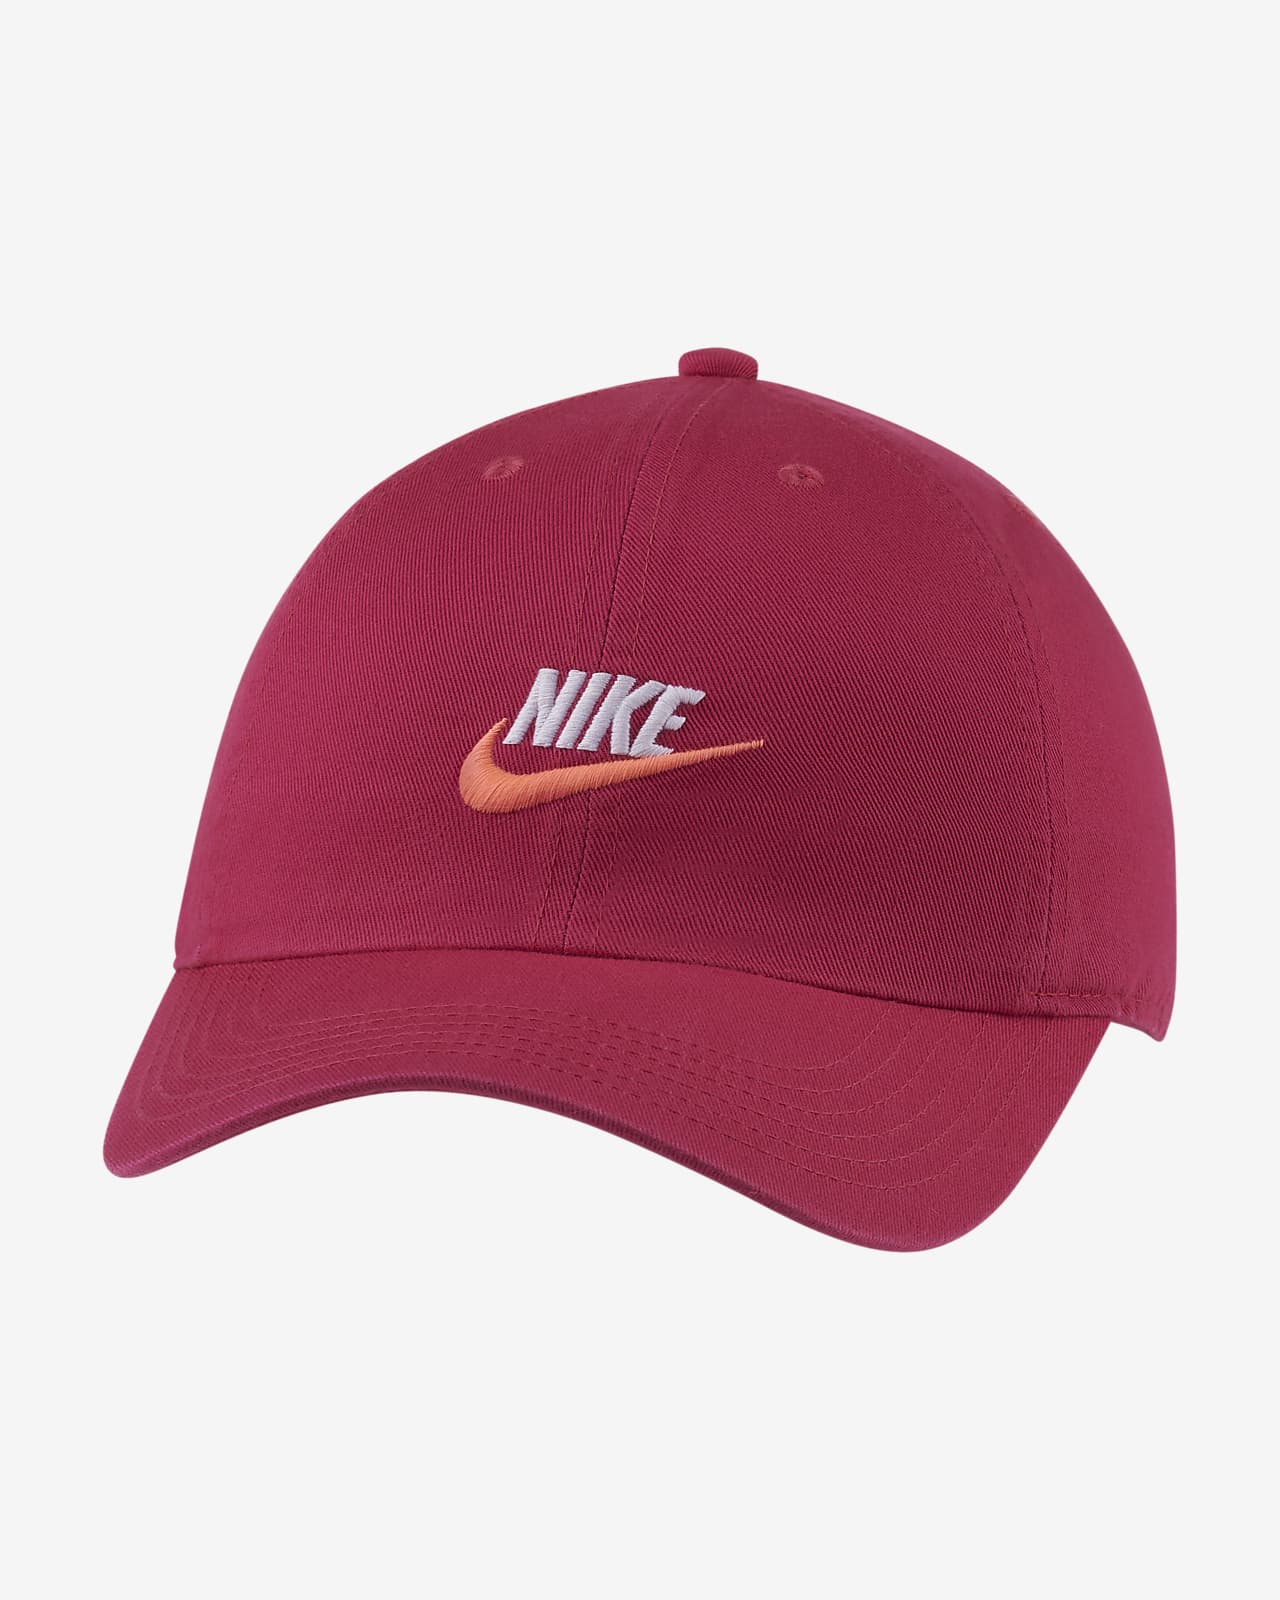 nike heritage 86 adjustable hat